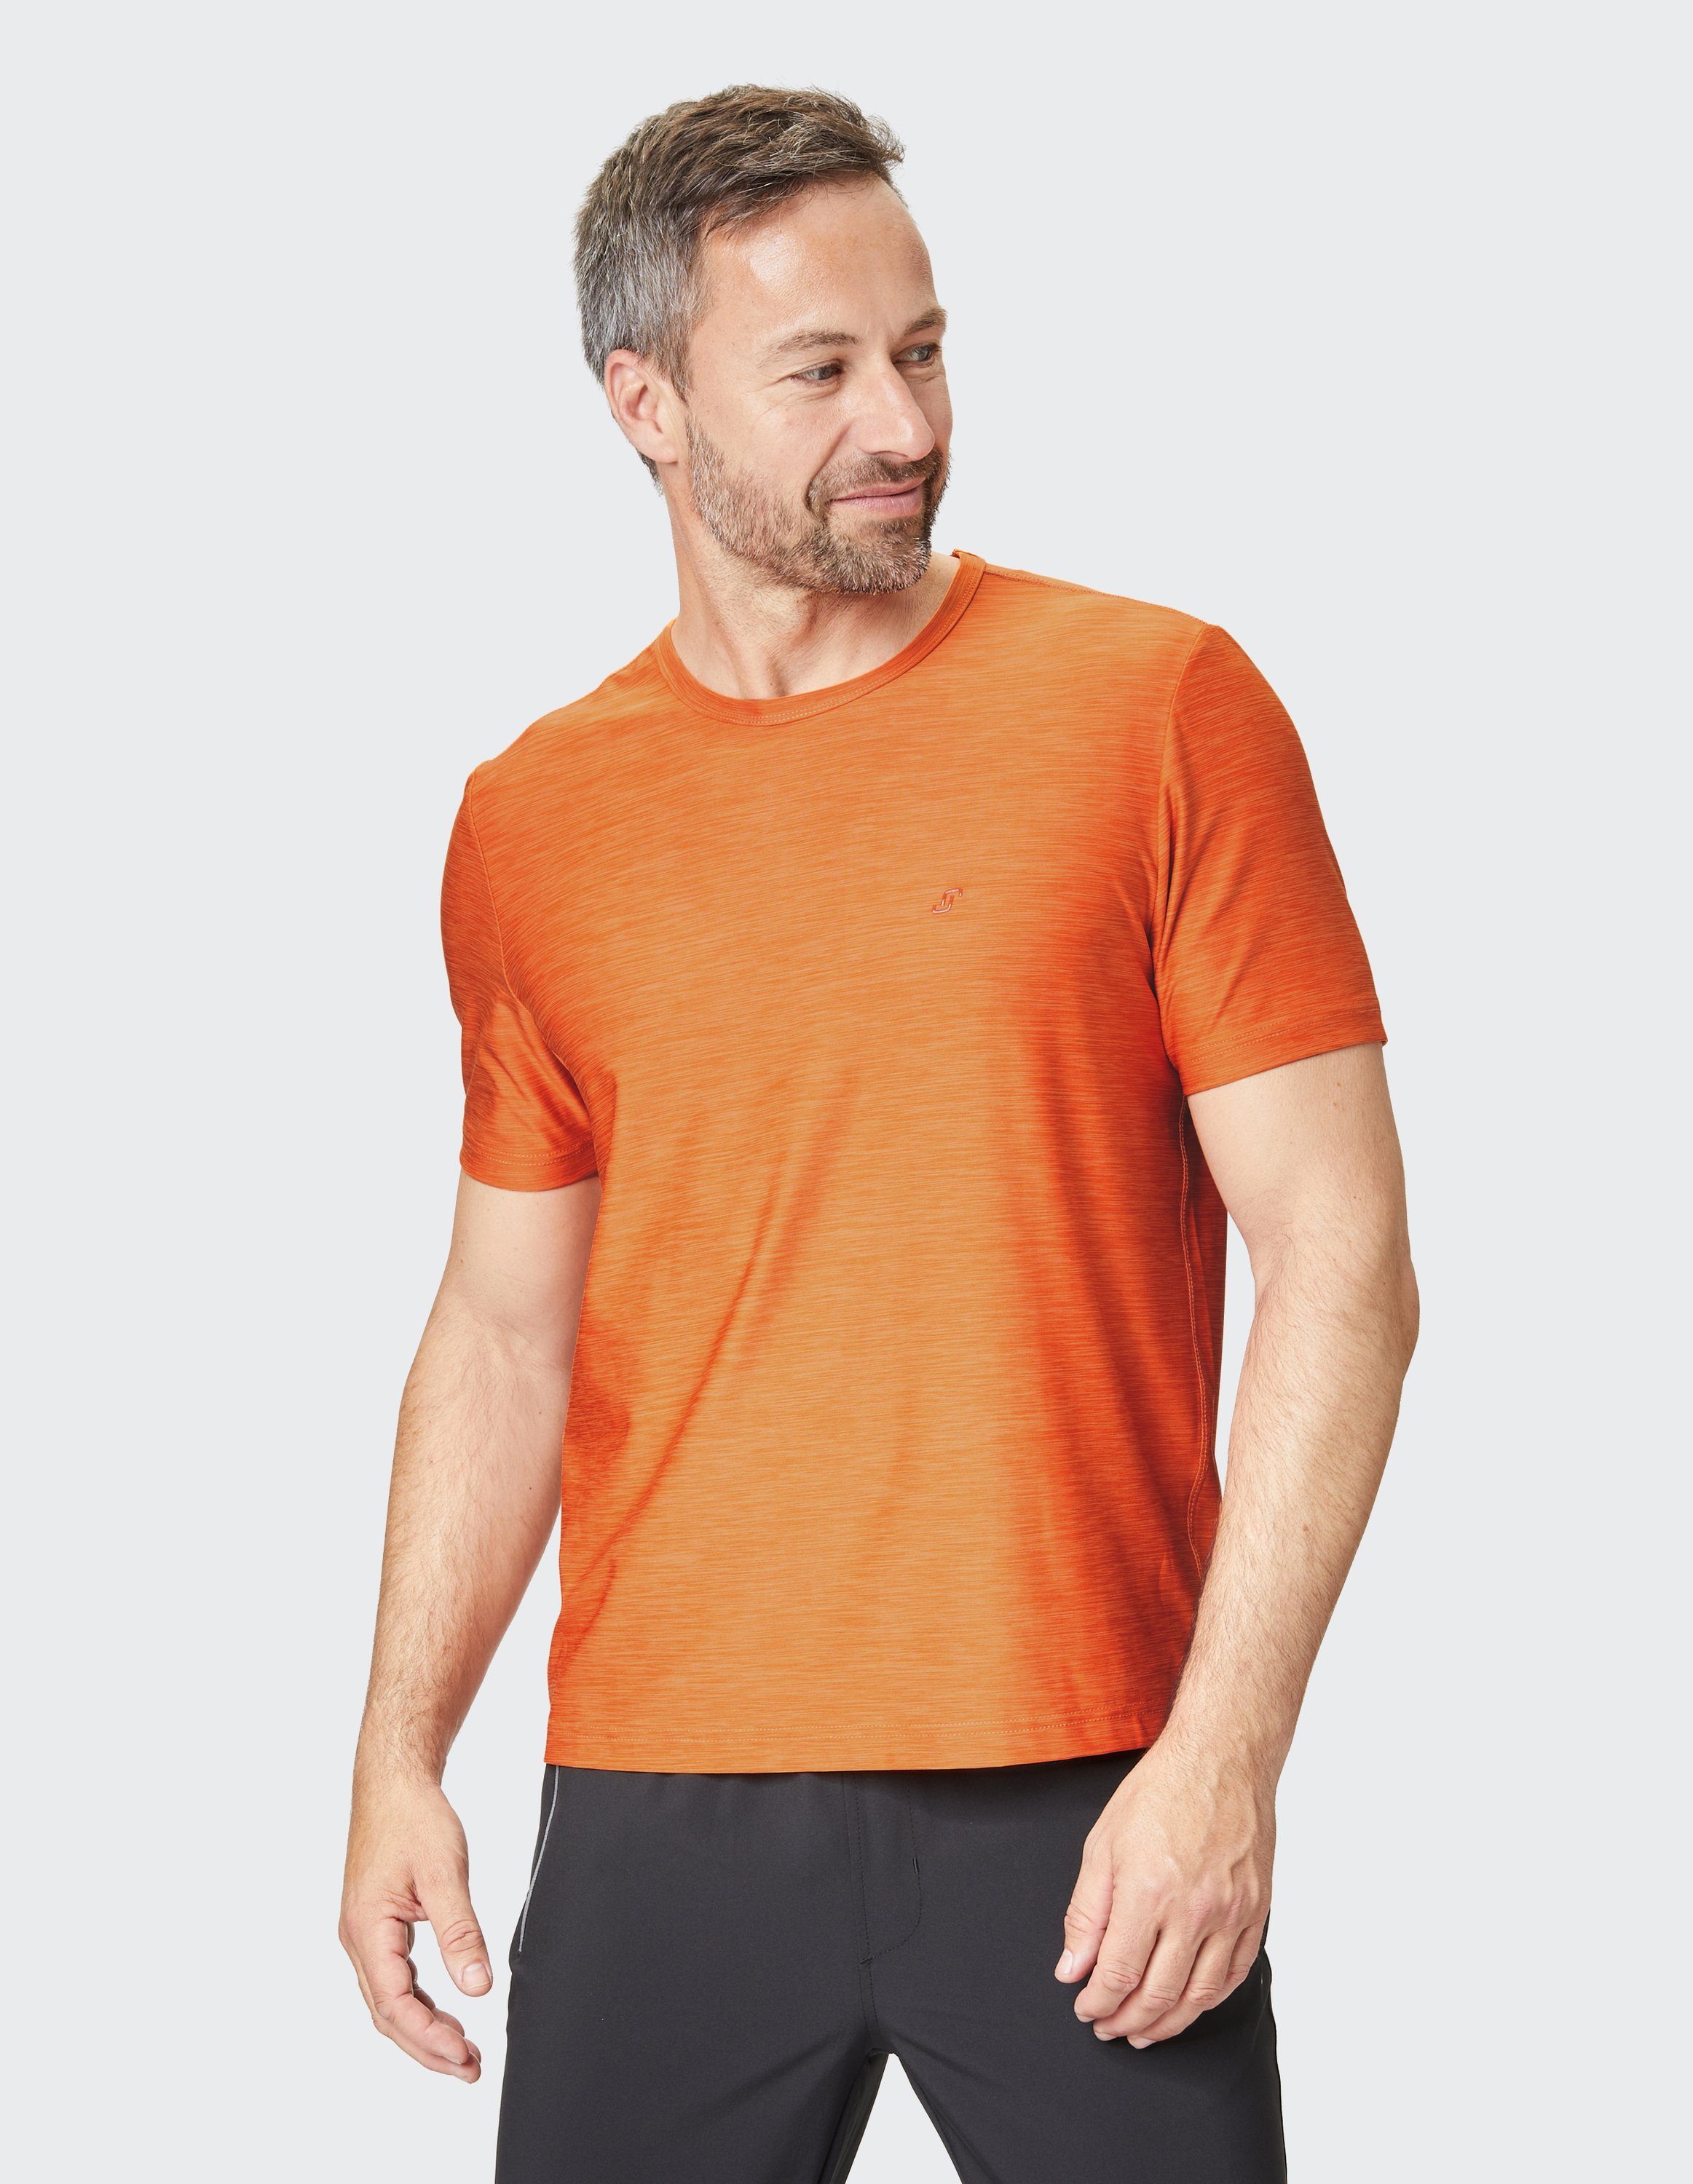 bolt T-Shirt T-Shirt VITUS mel orange Sportswear Joy